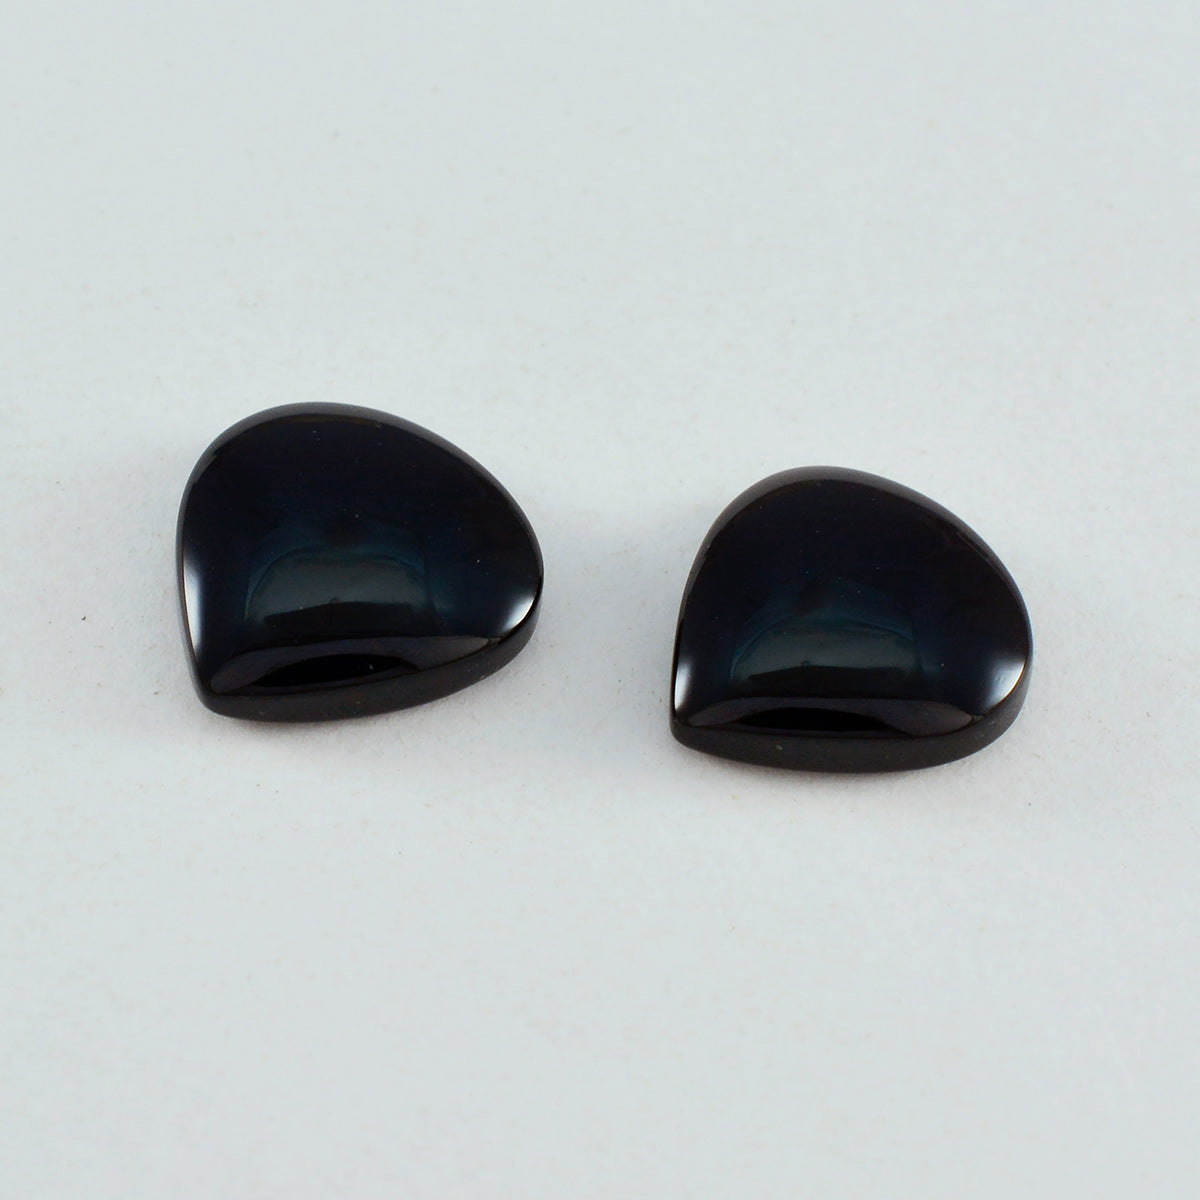 riyogems 1шт кабошон из черного оникса 13x13 мм в форме сердца, качественные россыпные драгоценные камни